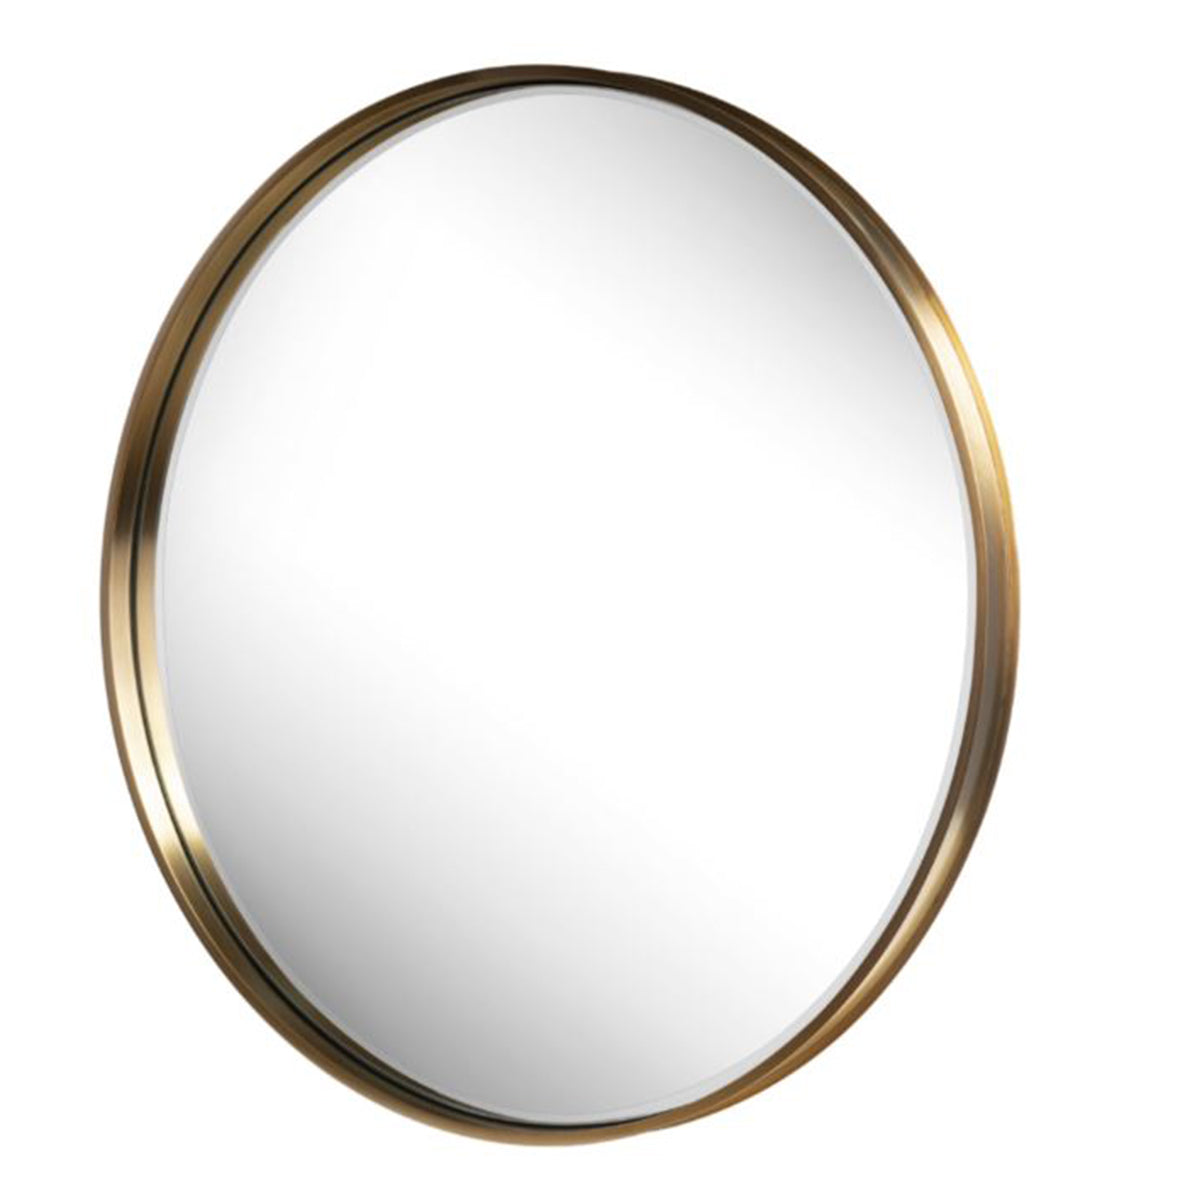 Riman Round Gold Mirror